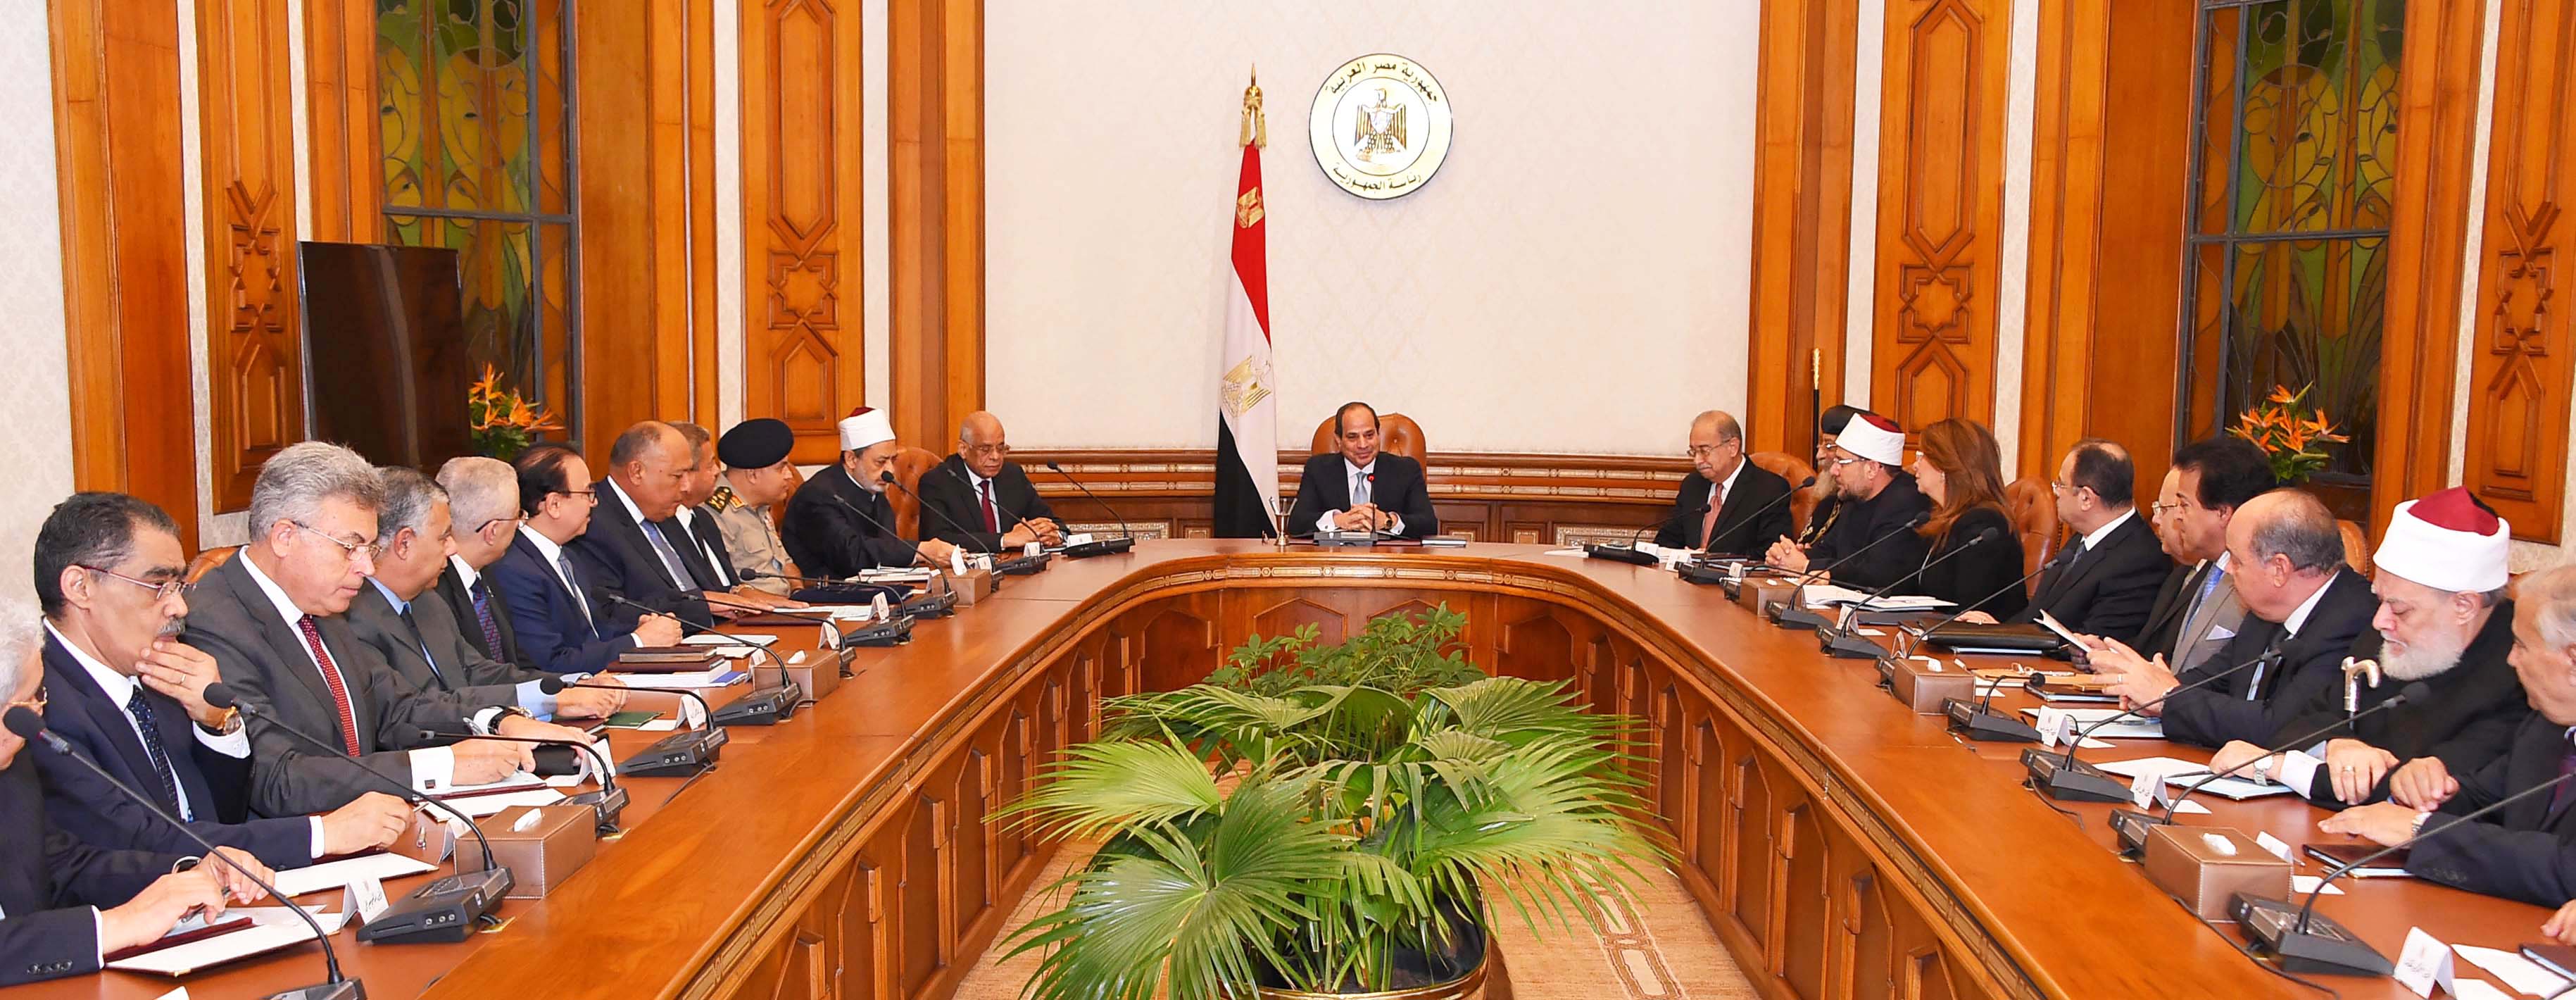 الاجتماع الأول للمجلس القومي لمواجهة الإرهاب والتطرف (2)